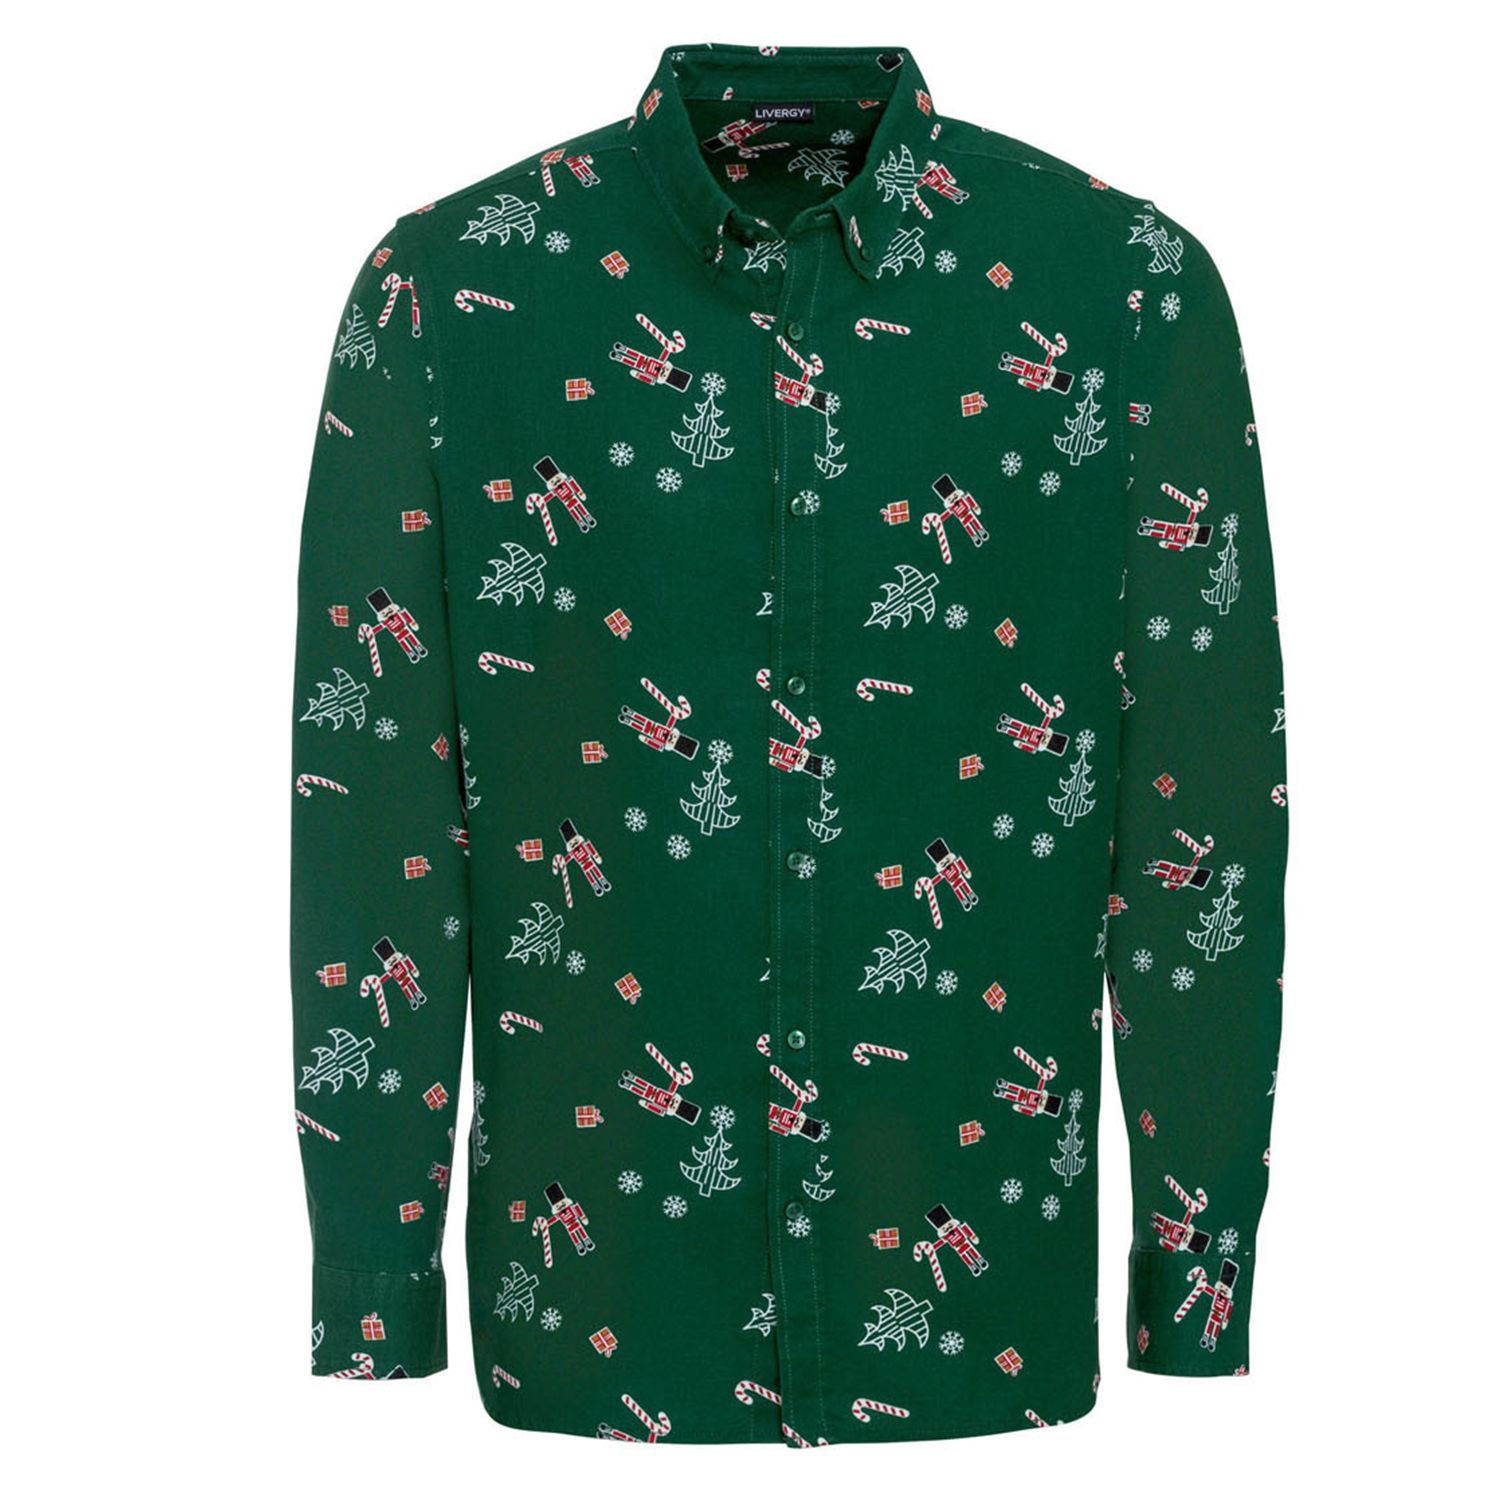 پیراهن آستین بلند مردانه لیورجی مدل کریسمسی کد Gr-chris2022 رنگ سبز